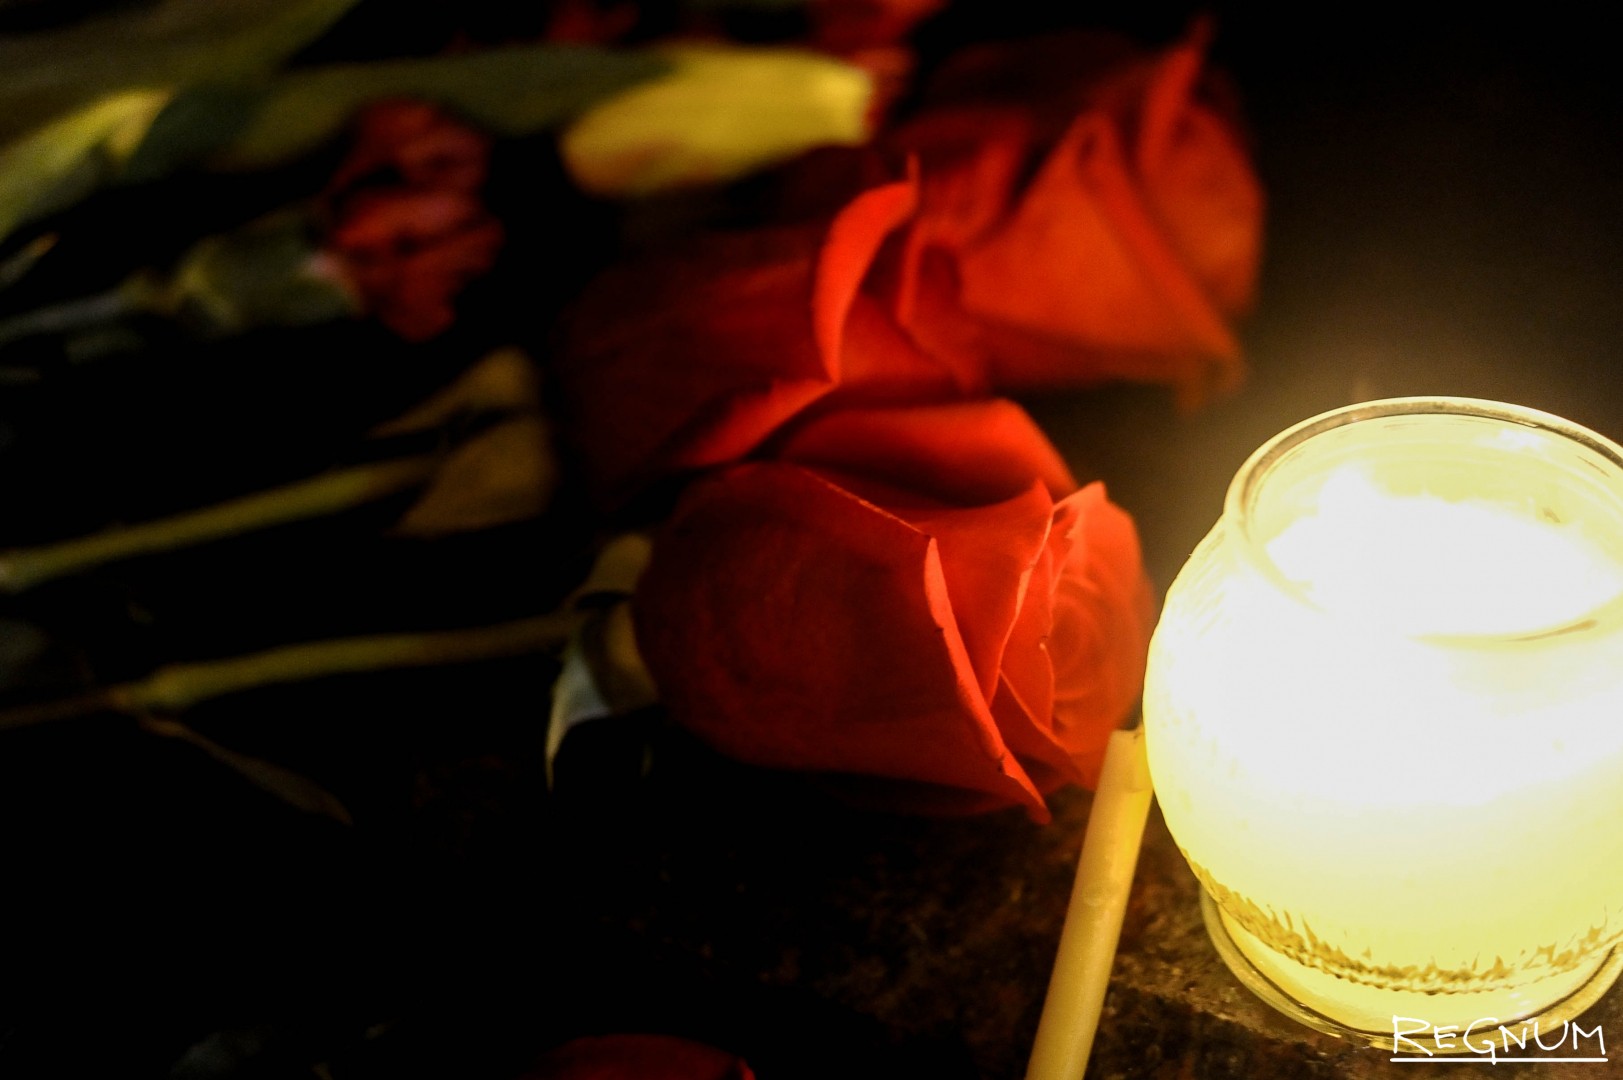 Скорбим фото со свечой крокус сити. Поминальная свеча. Траур. Цветы и свечи. Траурные свечи и цветы.